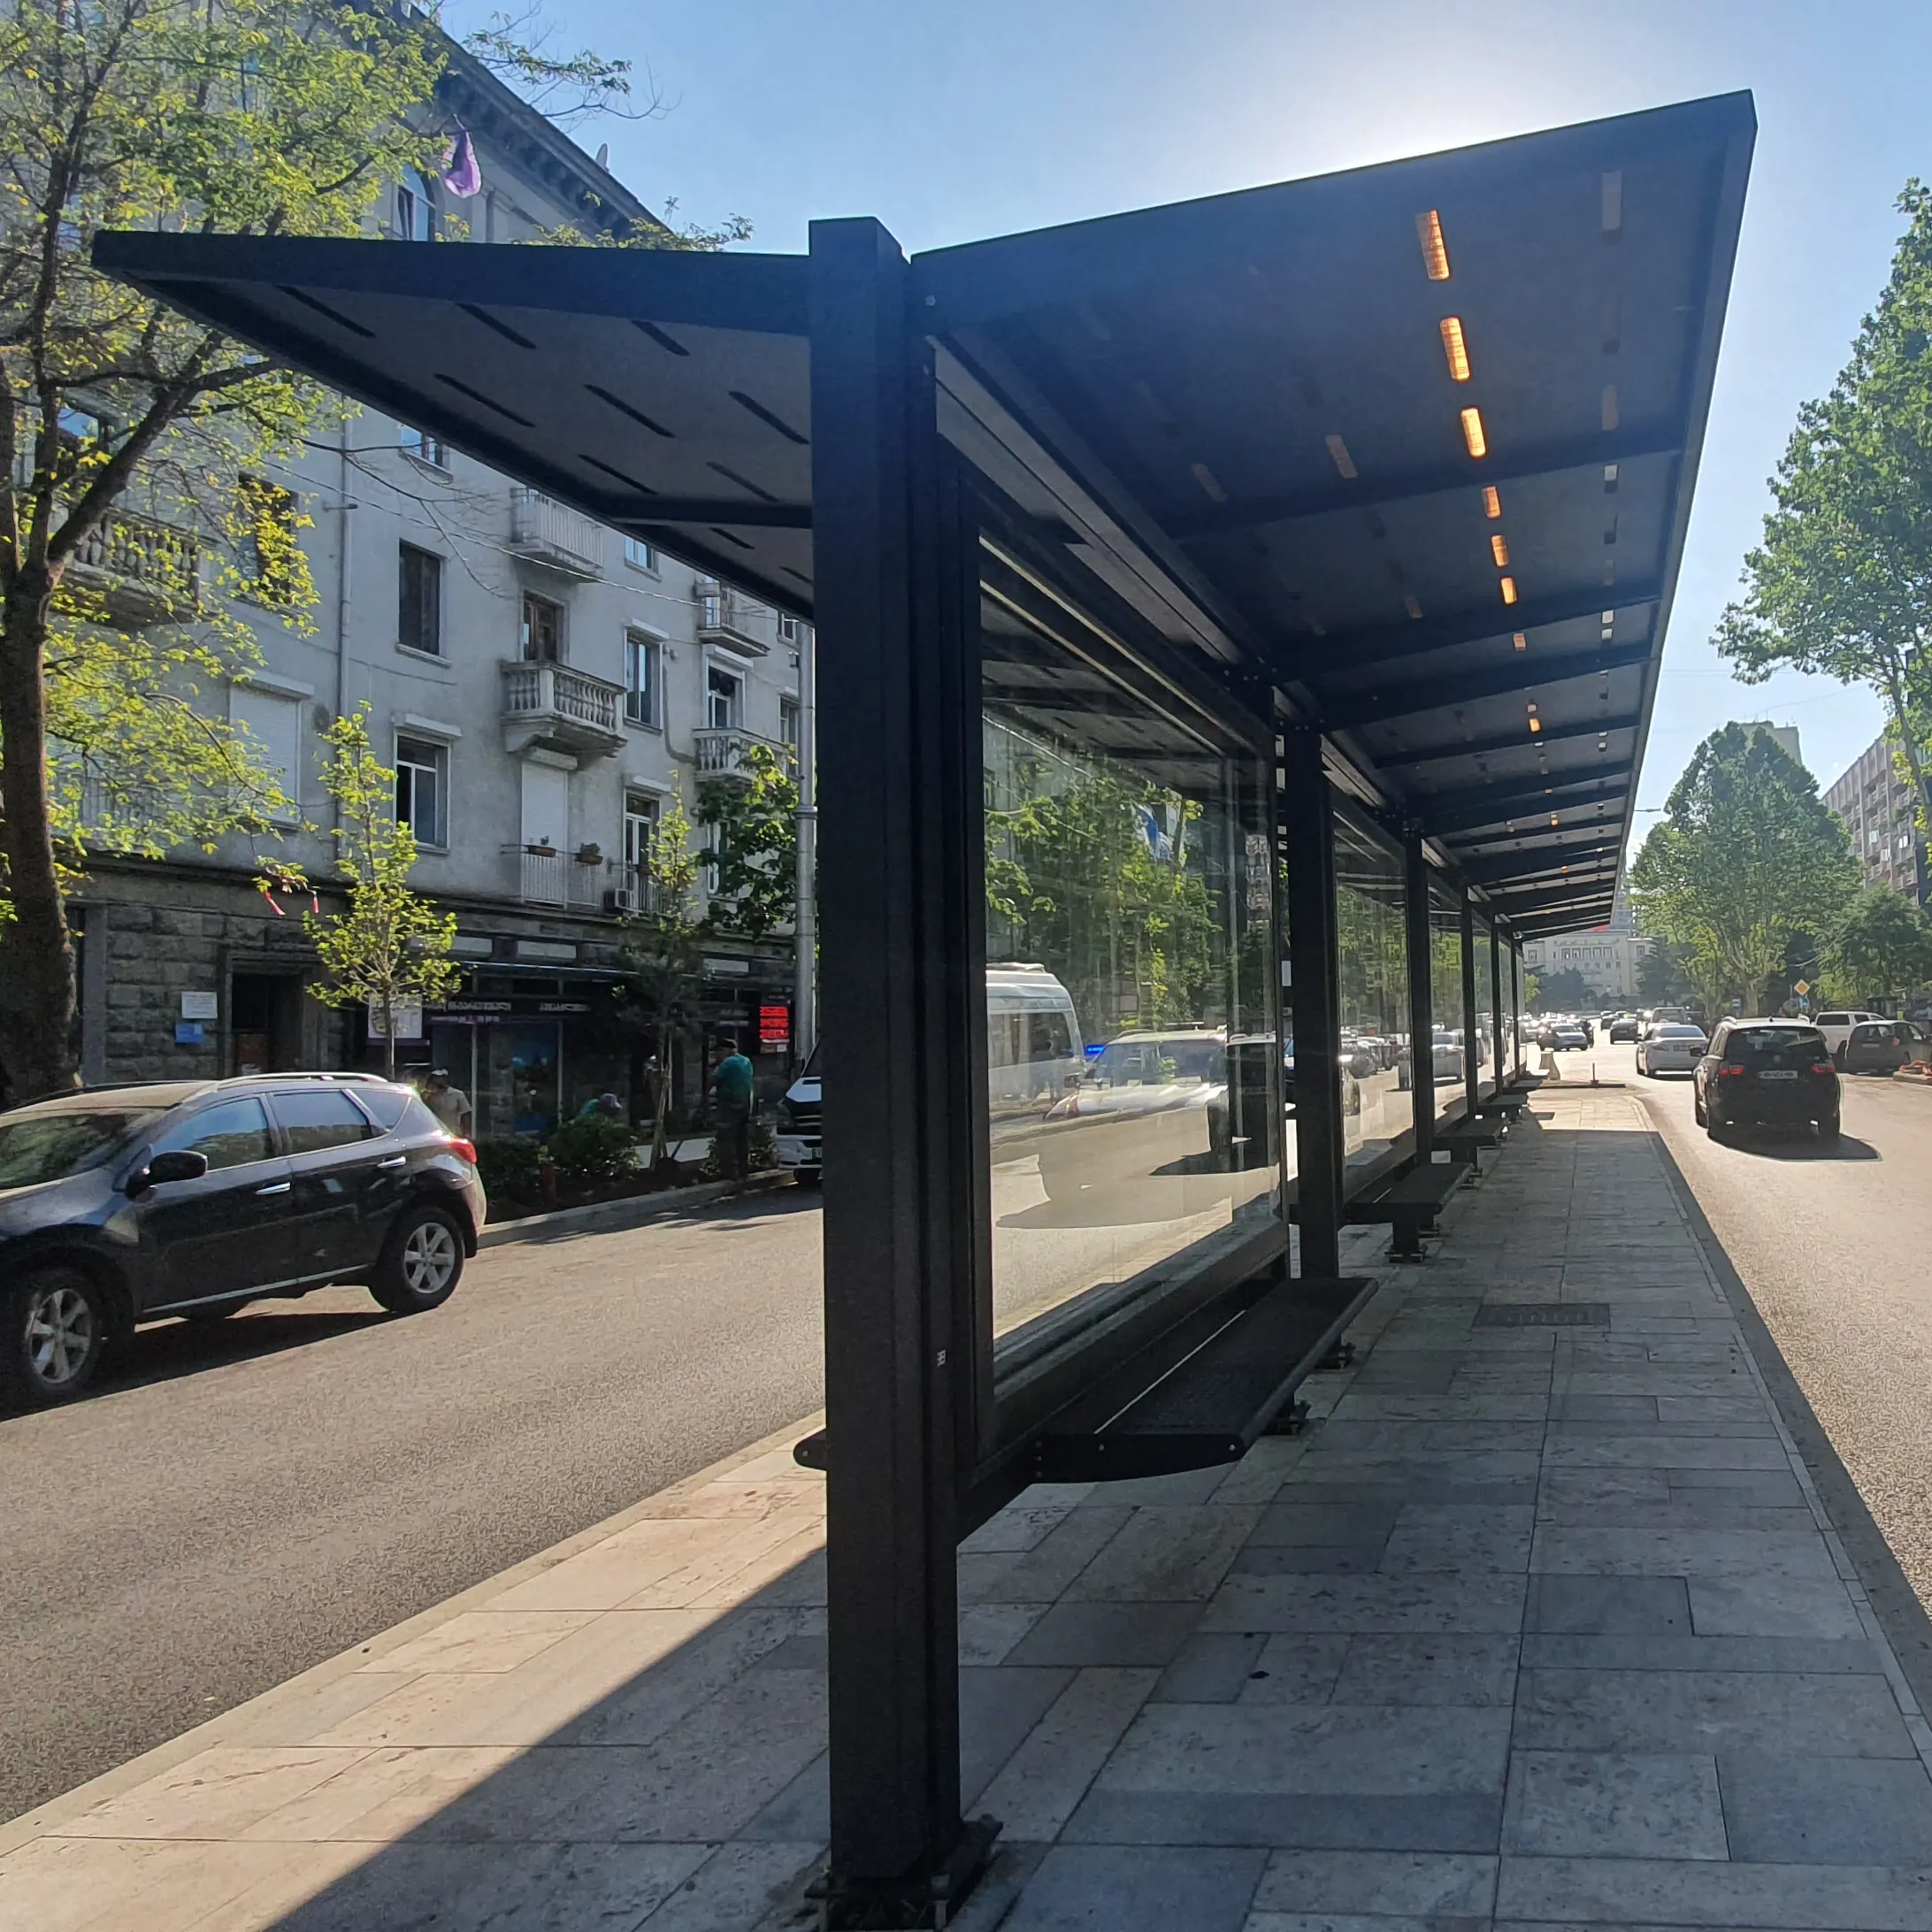 Parada de Ônibus de dupla Face/Propaganda Bus Stop, Abrigo com Lightbox Quiosque